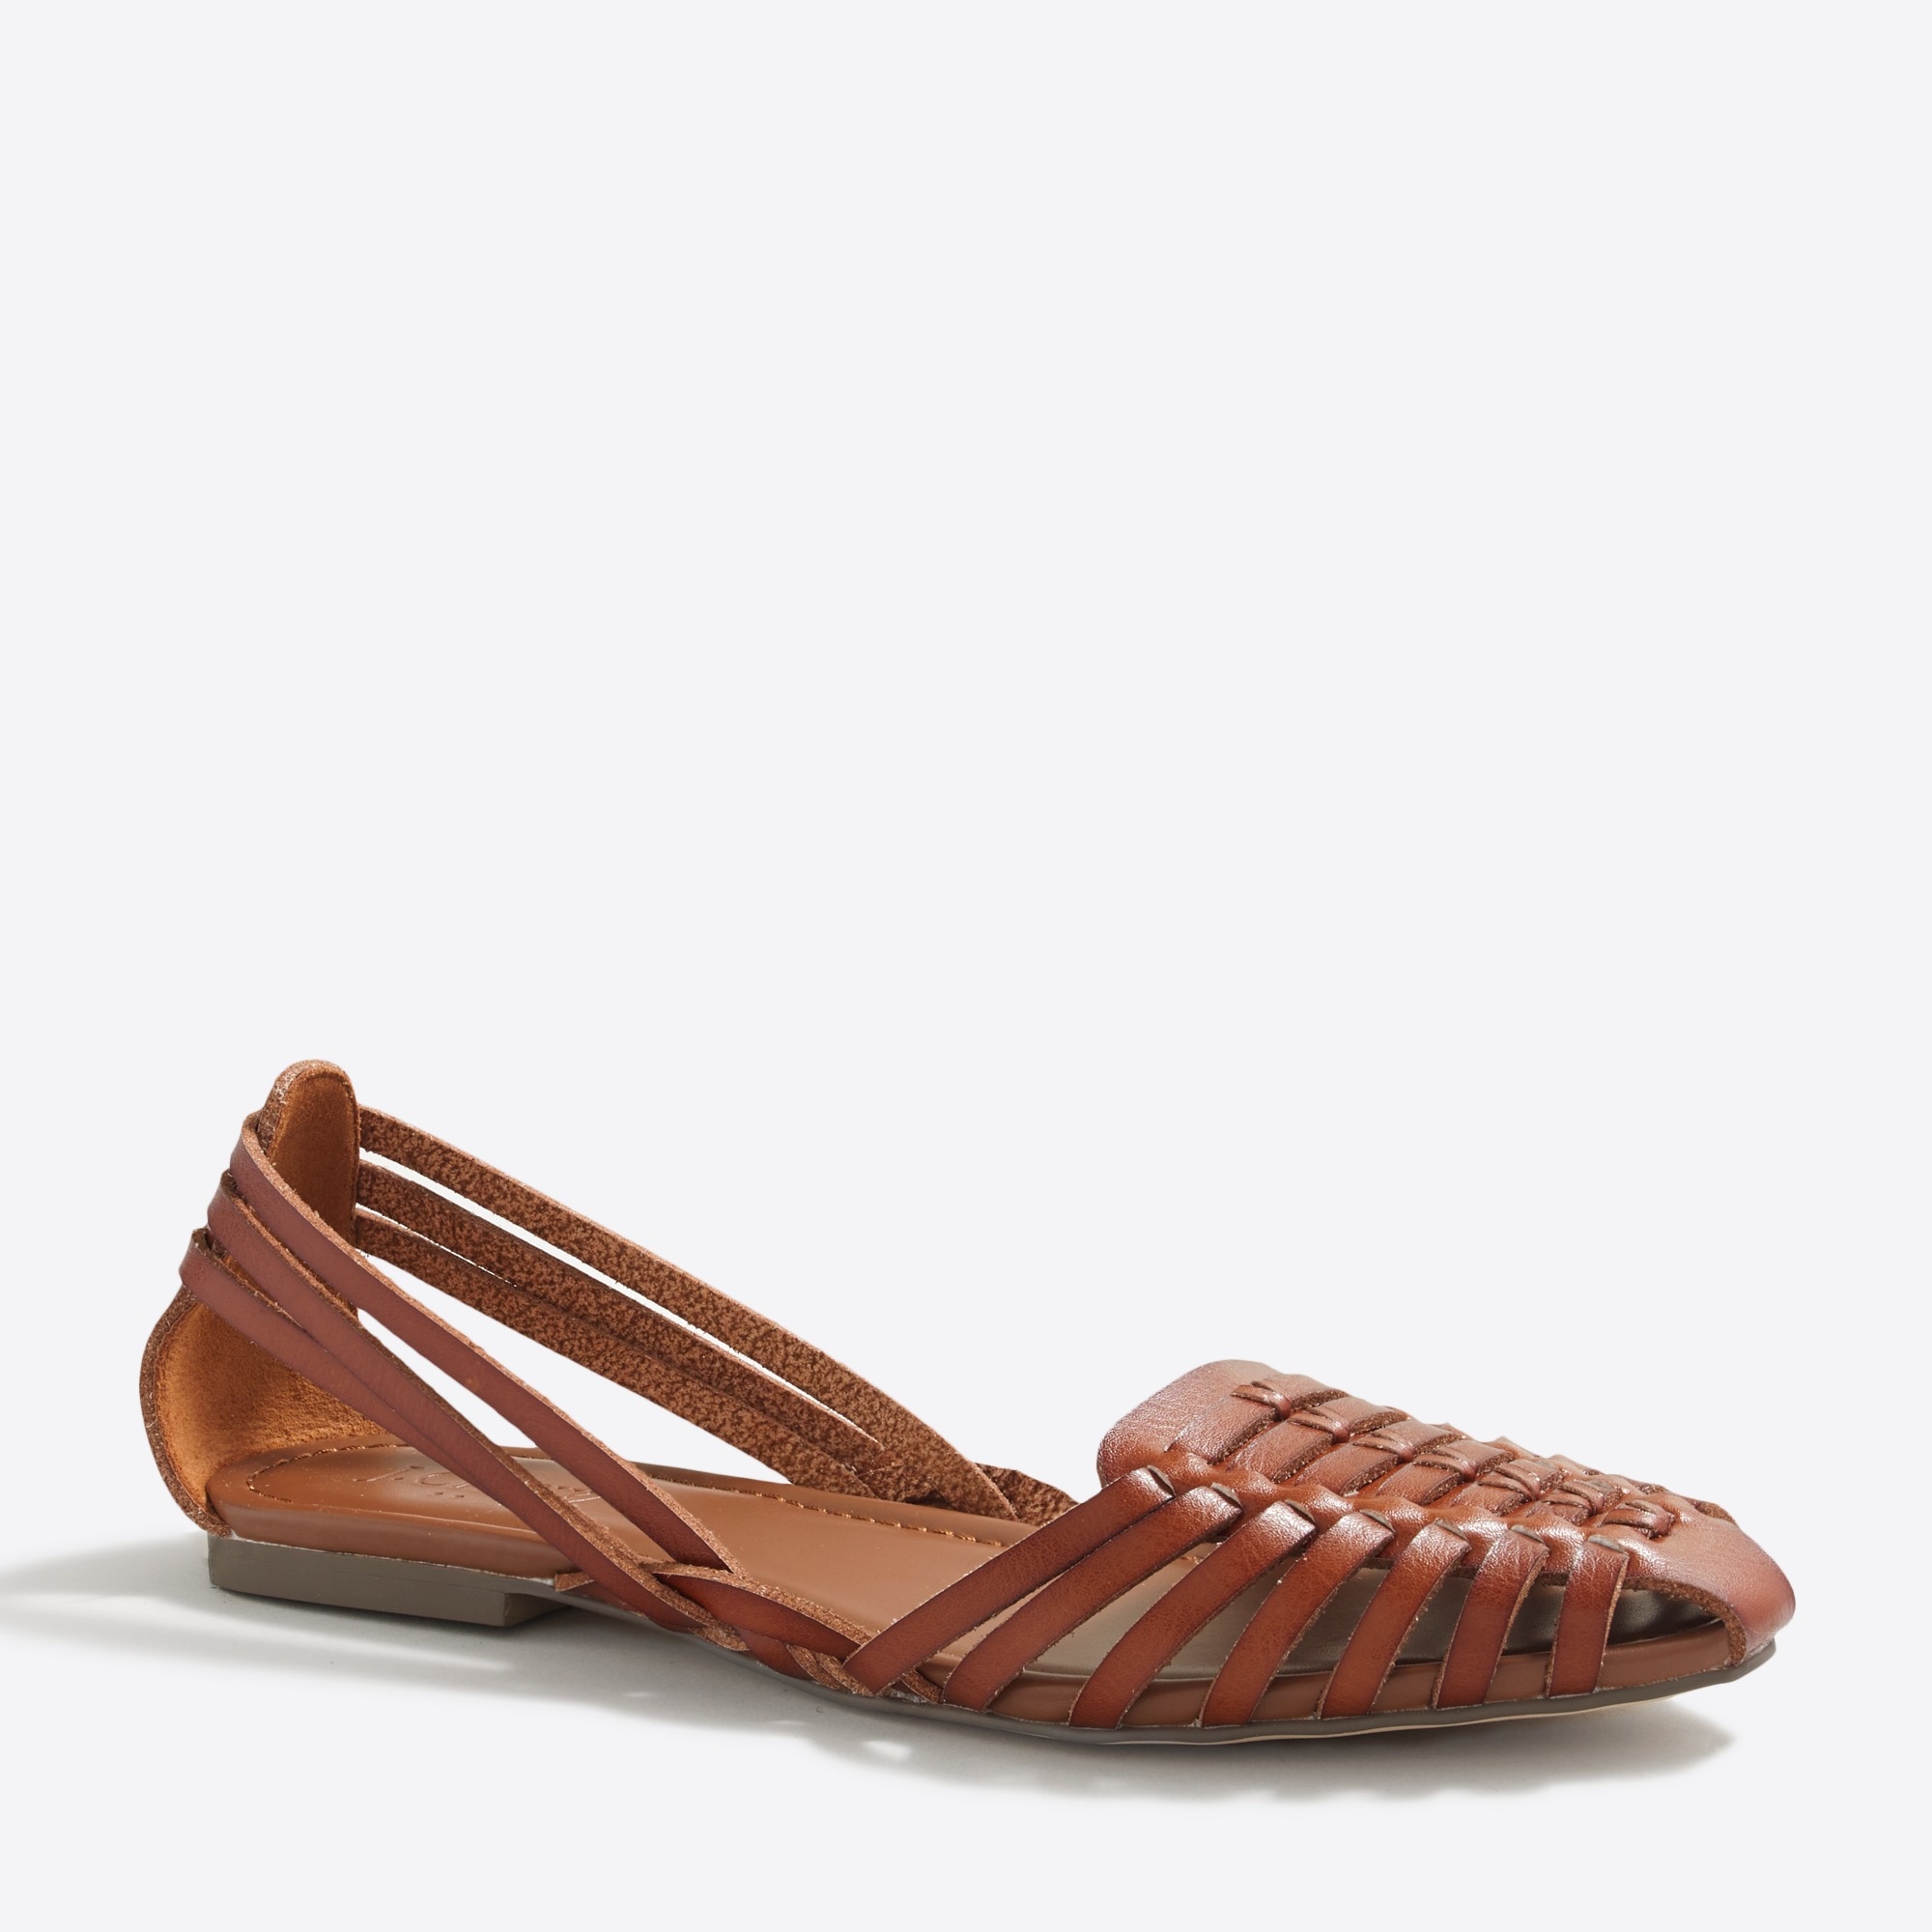 J.Crew Factory: Huarache sandals for Women